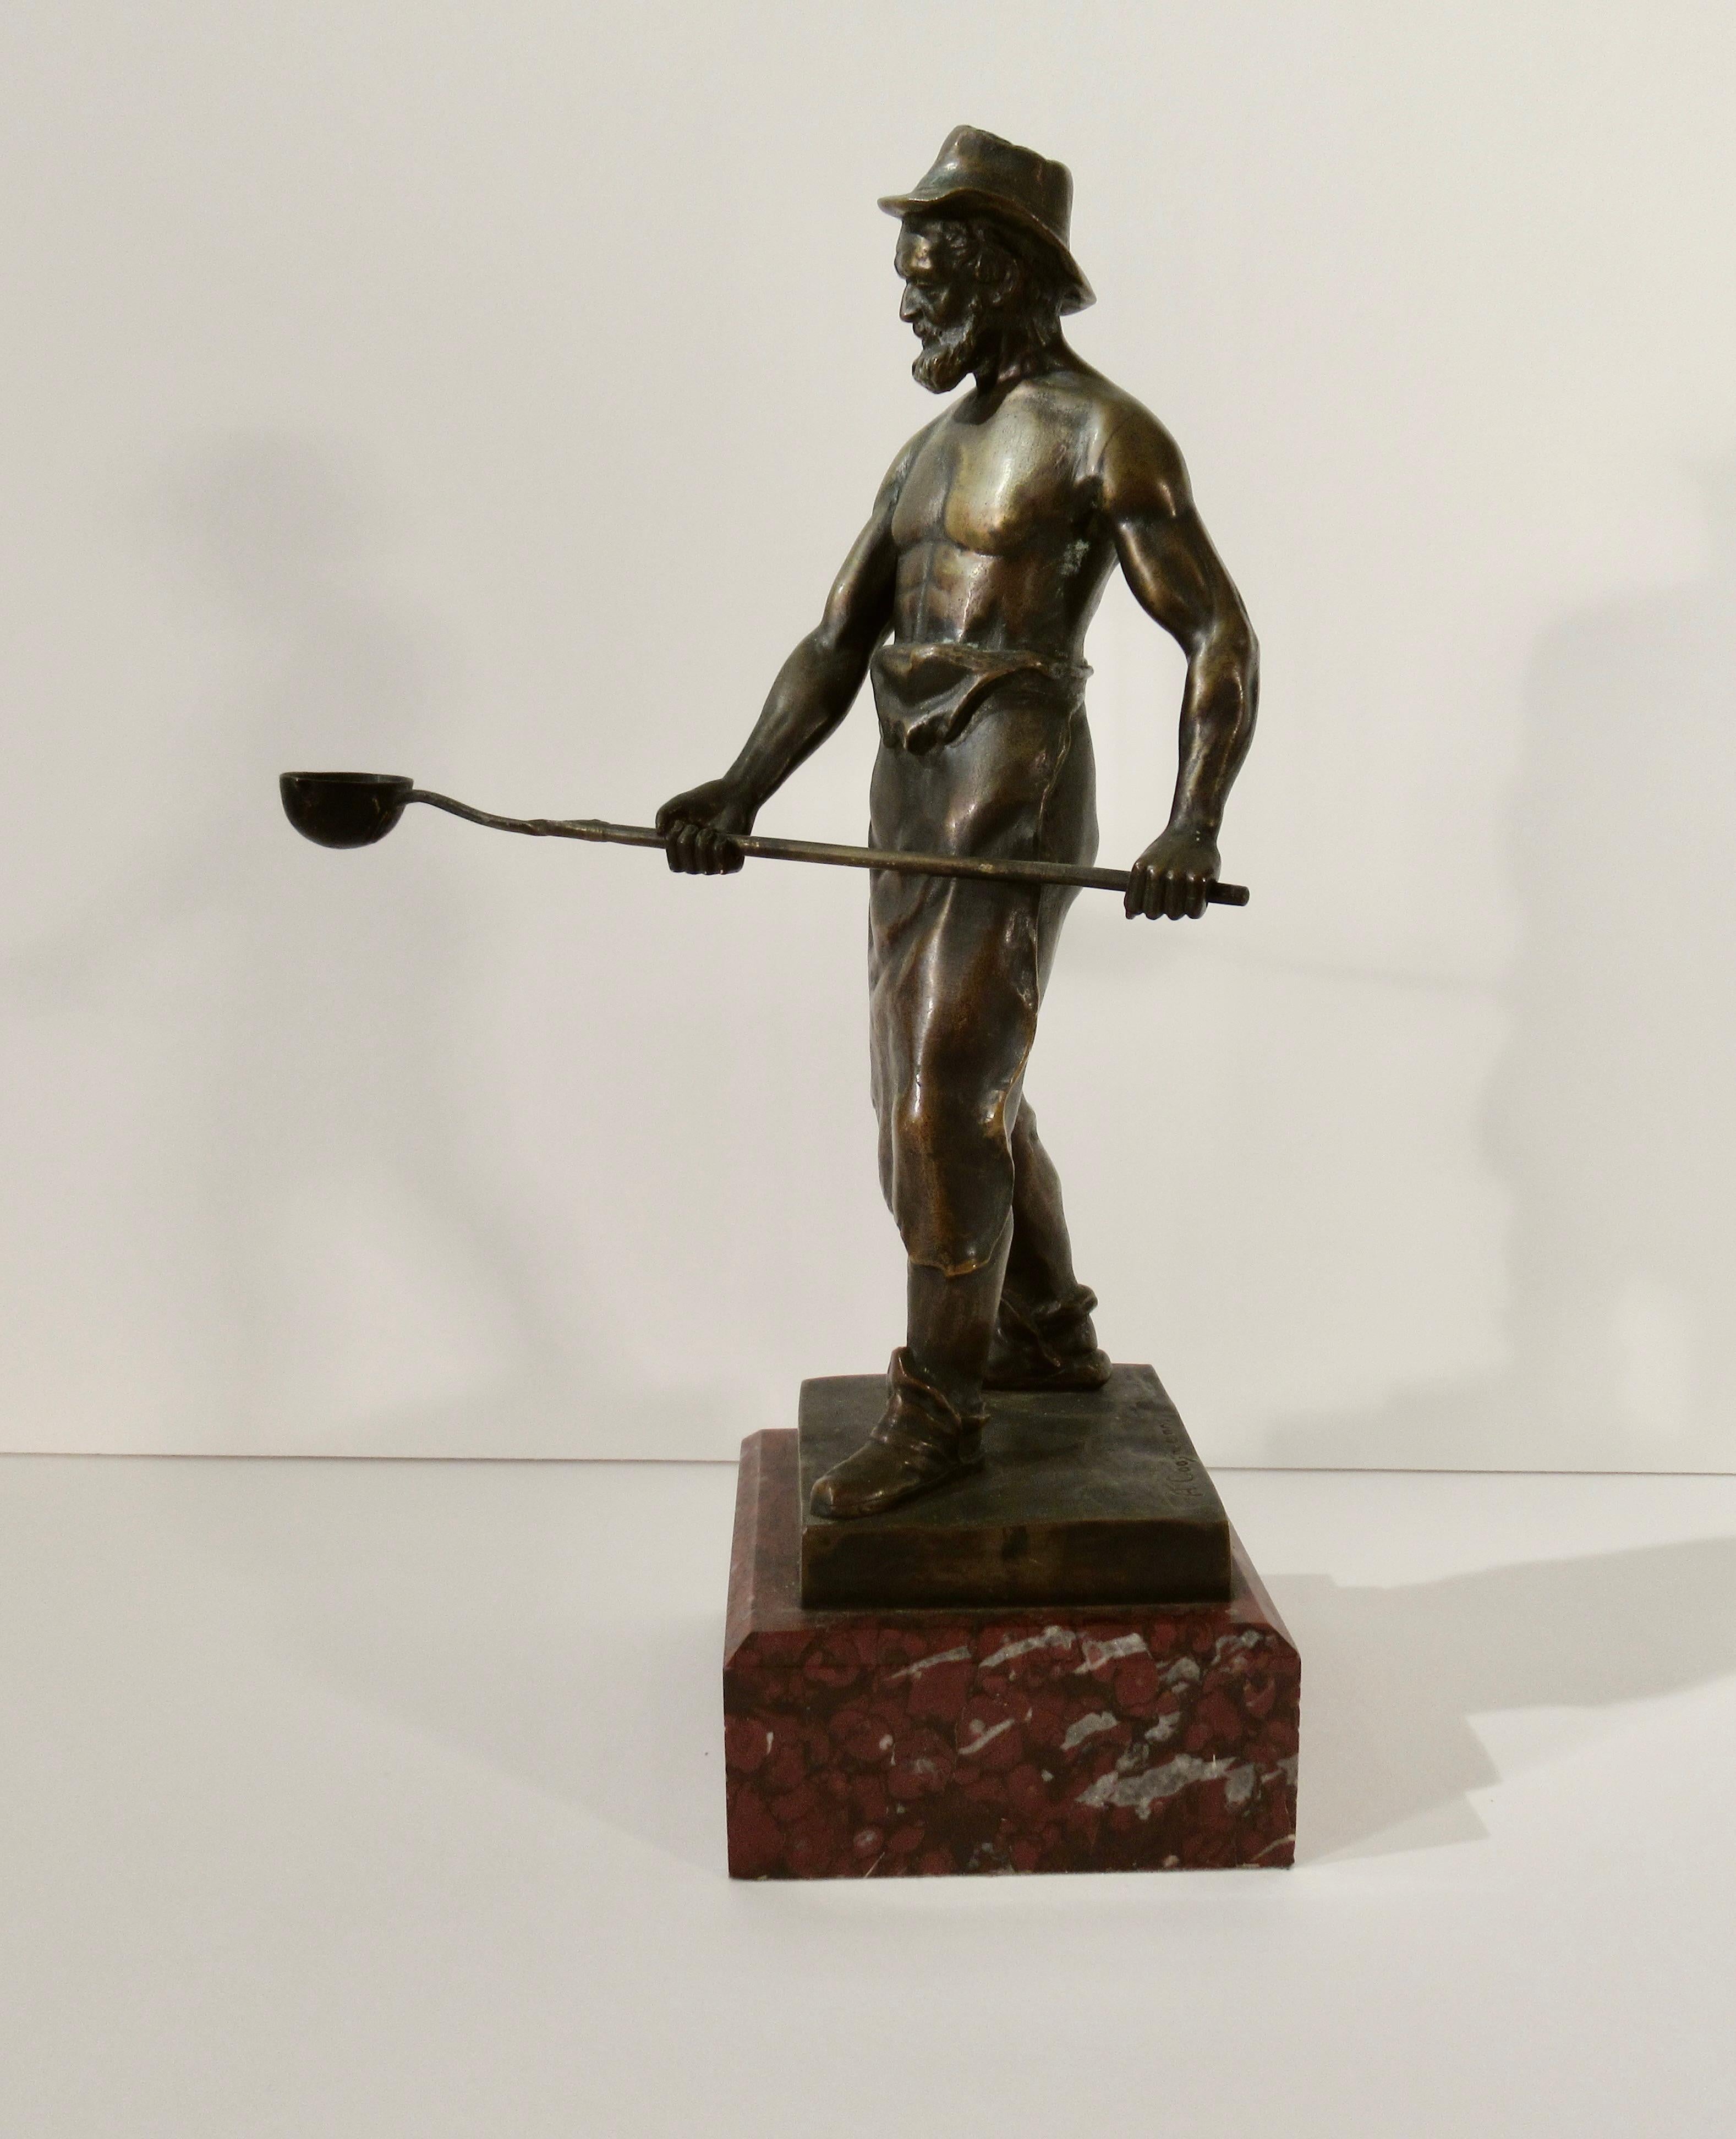 Albert Caasmann Figurative Sculpture - The Foundry Worker